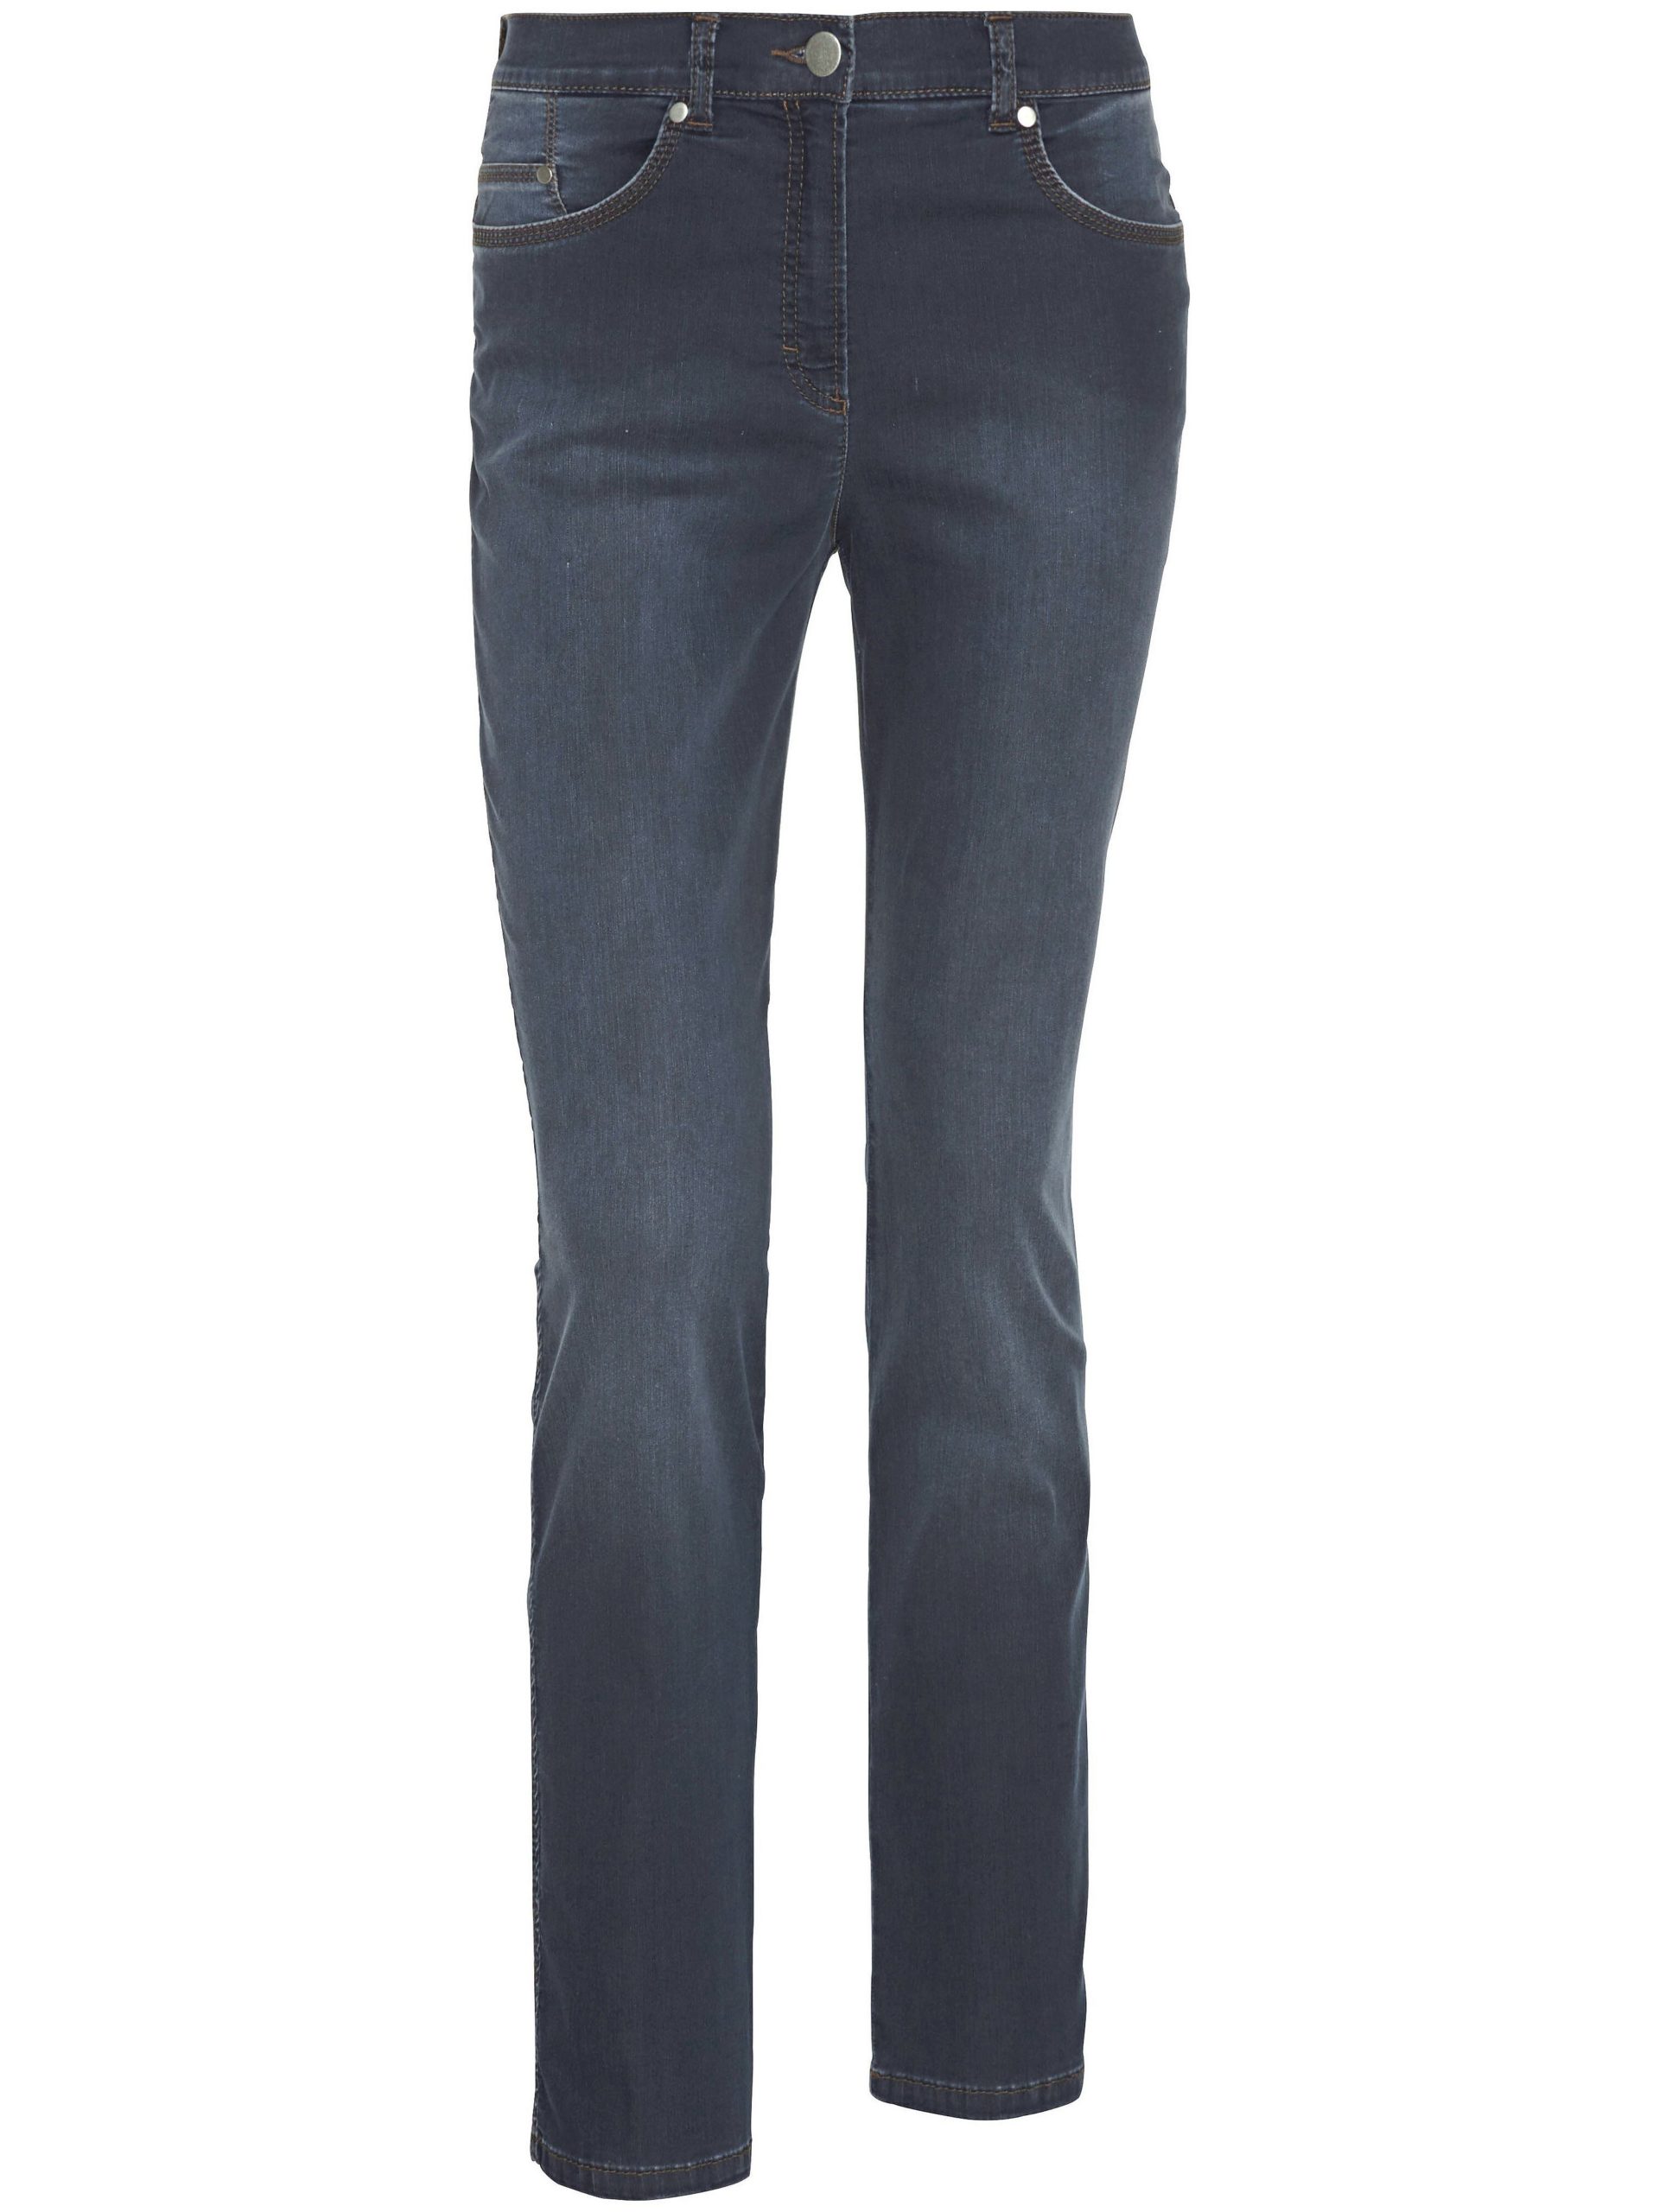 Modellerende Comfort Plus-jeans model Caren Van Raphaela by Brax denim Kopen